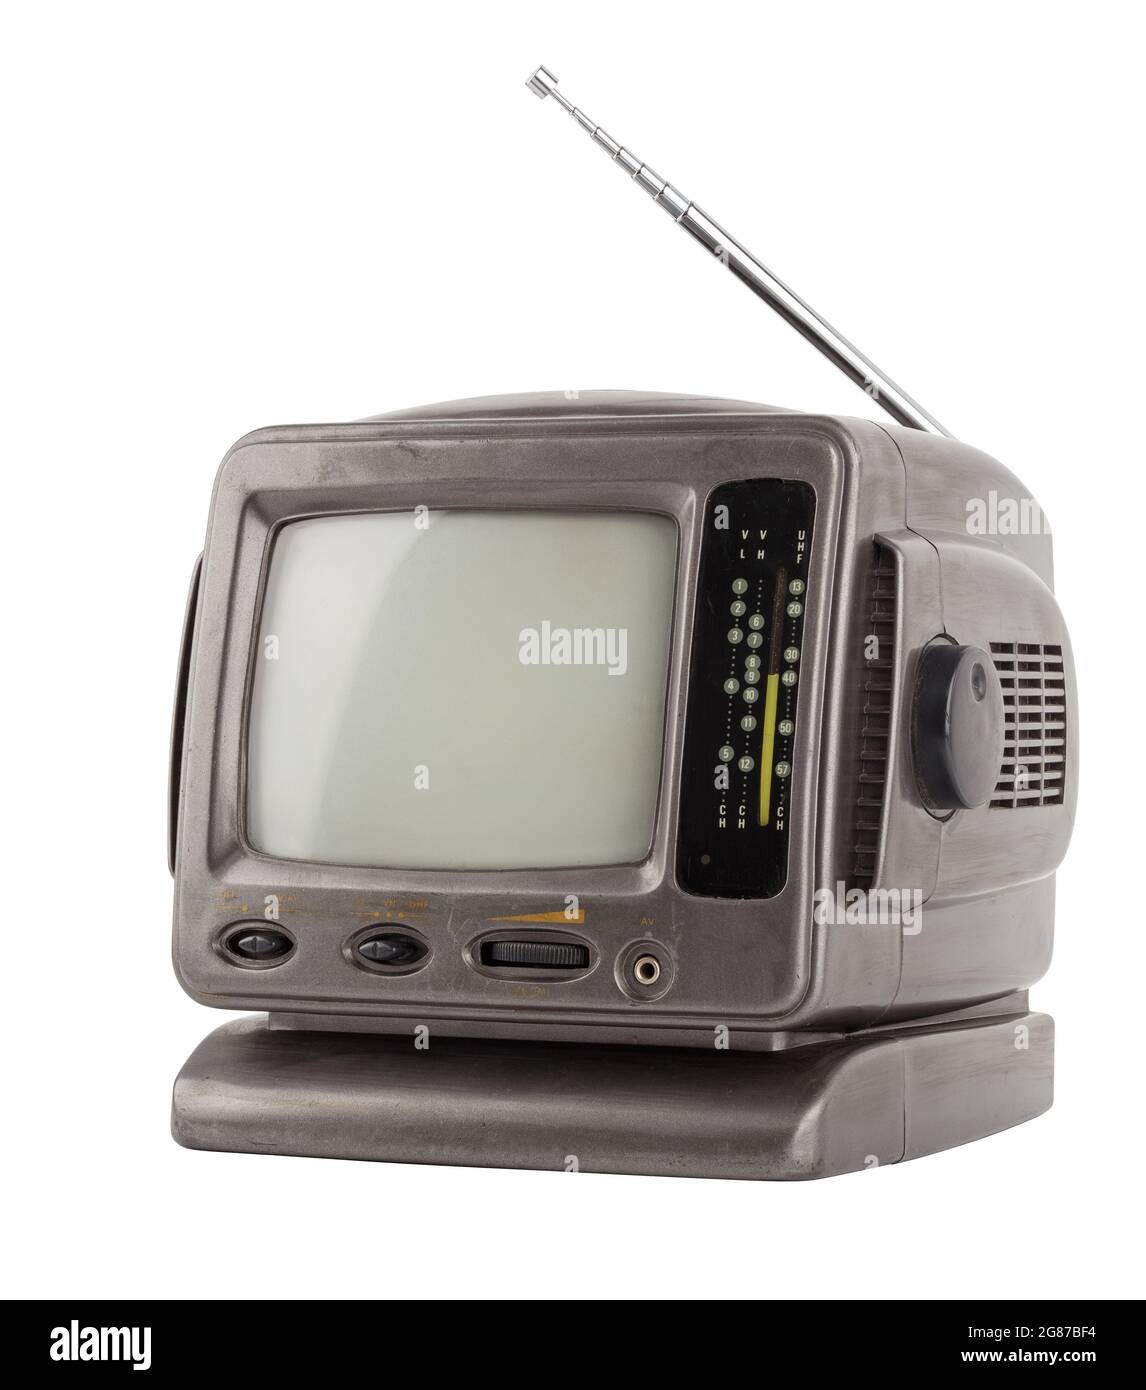 antigua unidad de tv crt analógica de 5,5 pulgadas, aislada sobre fondo  blanco Fotografía de stock - Alamy